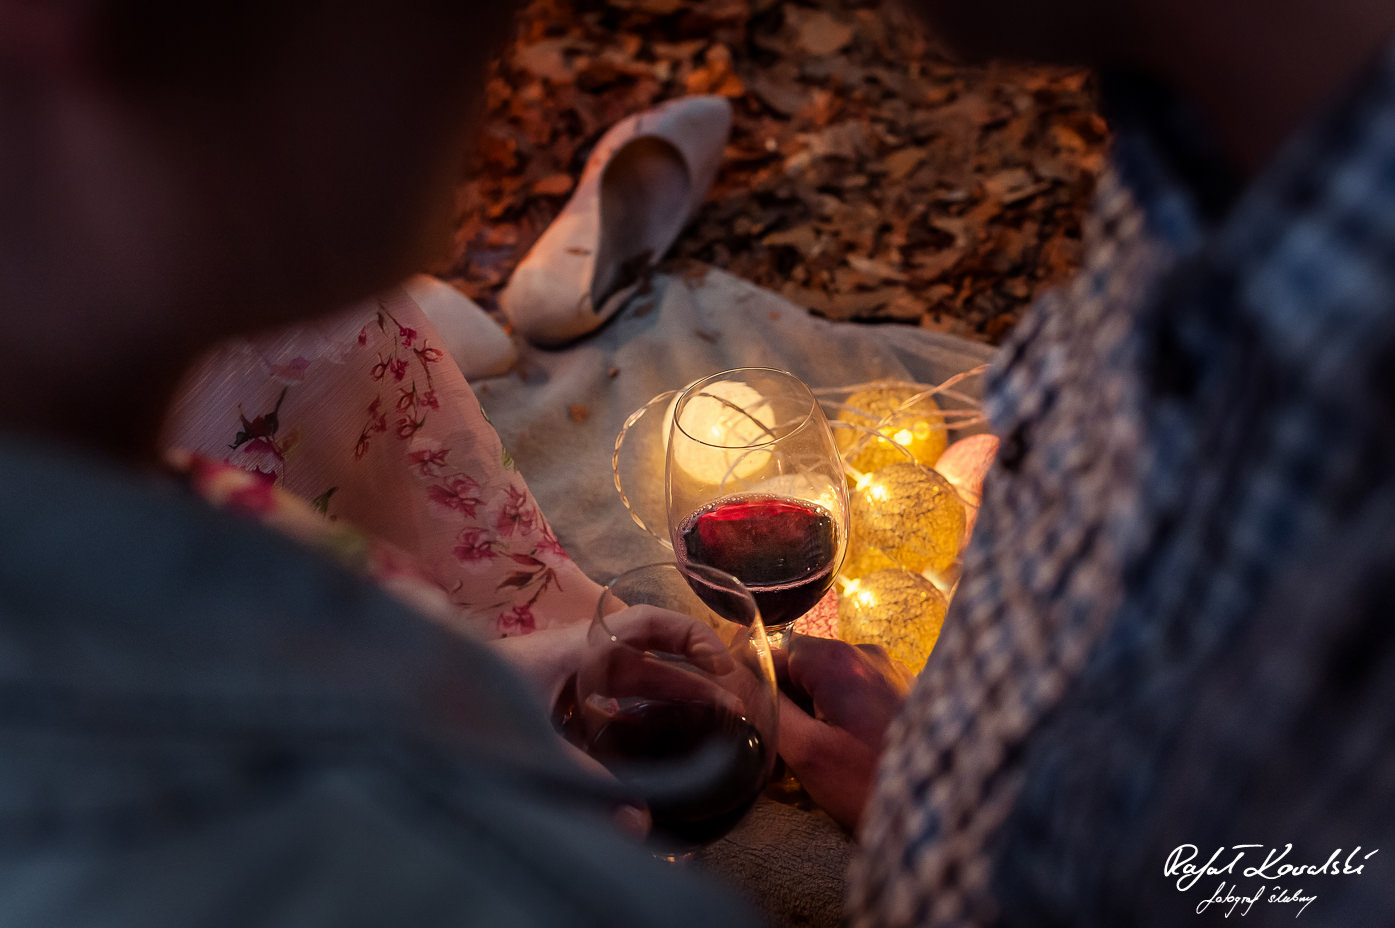 czerwone wino doskonale podkreślało romantyczna atmosferę sesji zdjęciowej